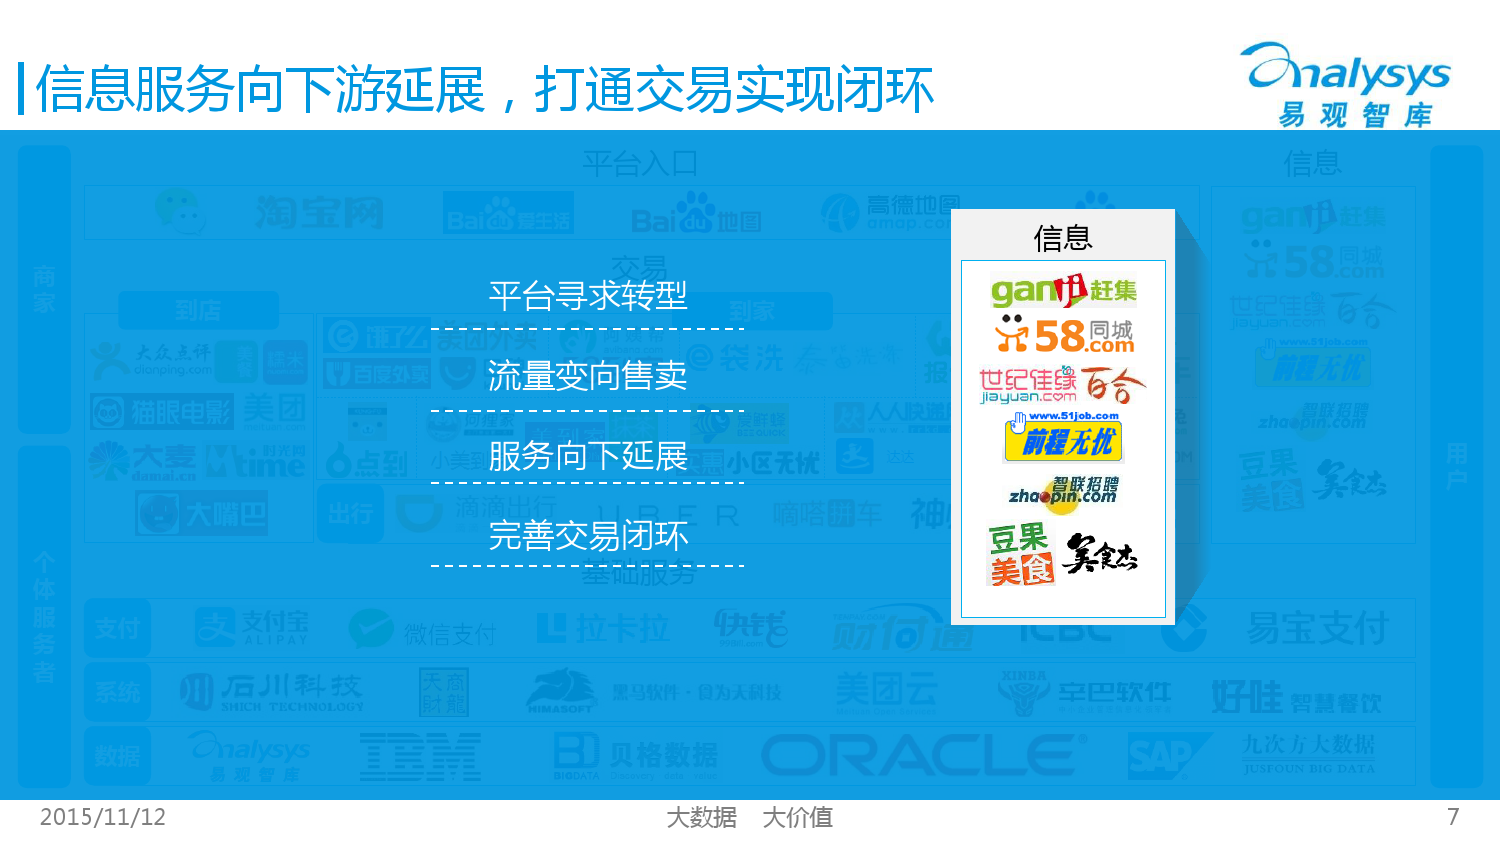 中国互联网生活服务市场生态图谱2015 01_000007